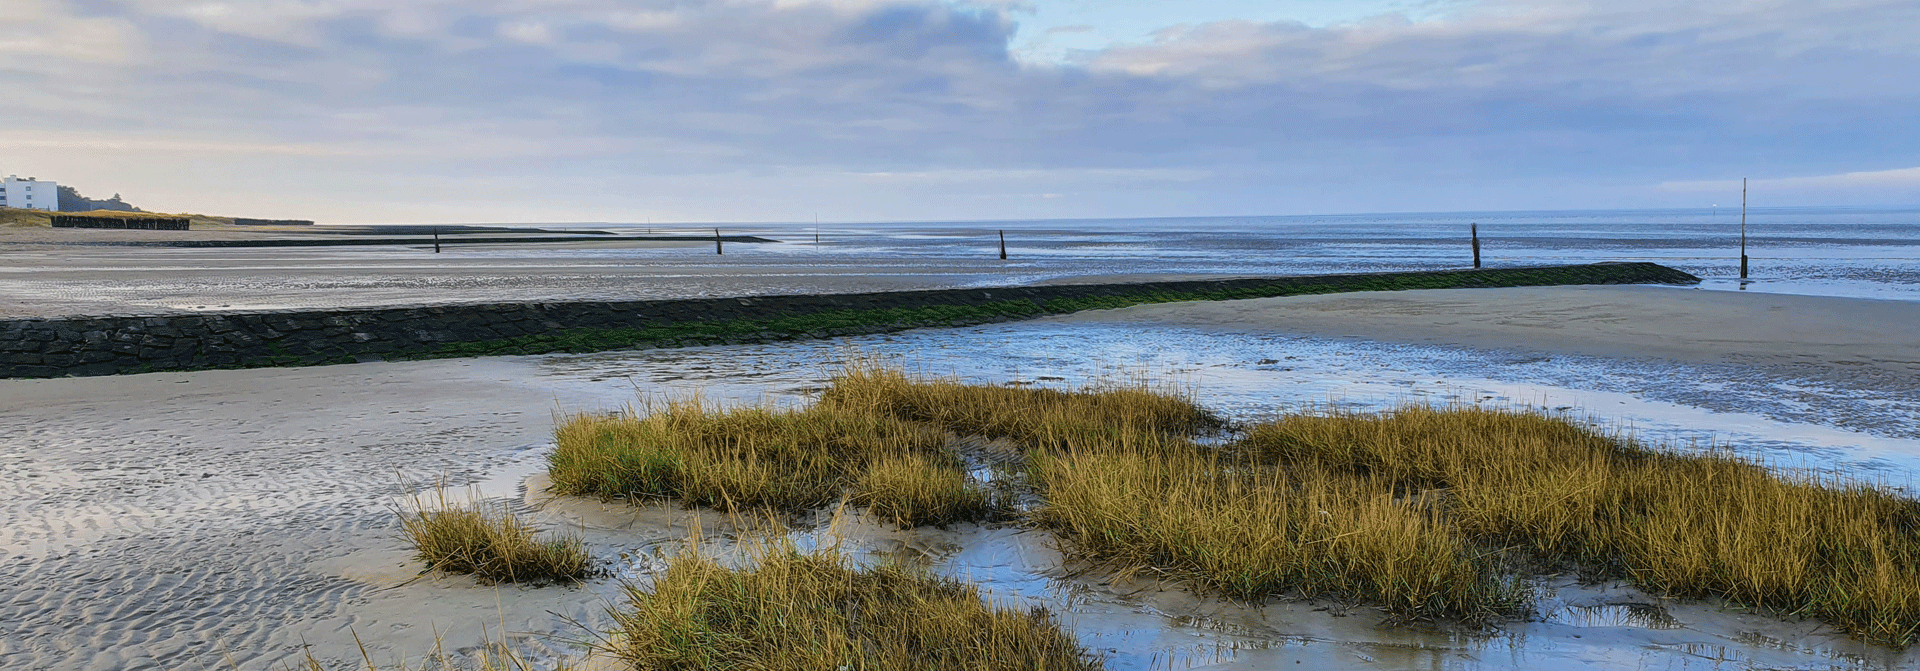 Strand an der Nordsee vor Cuxhaven